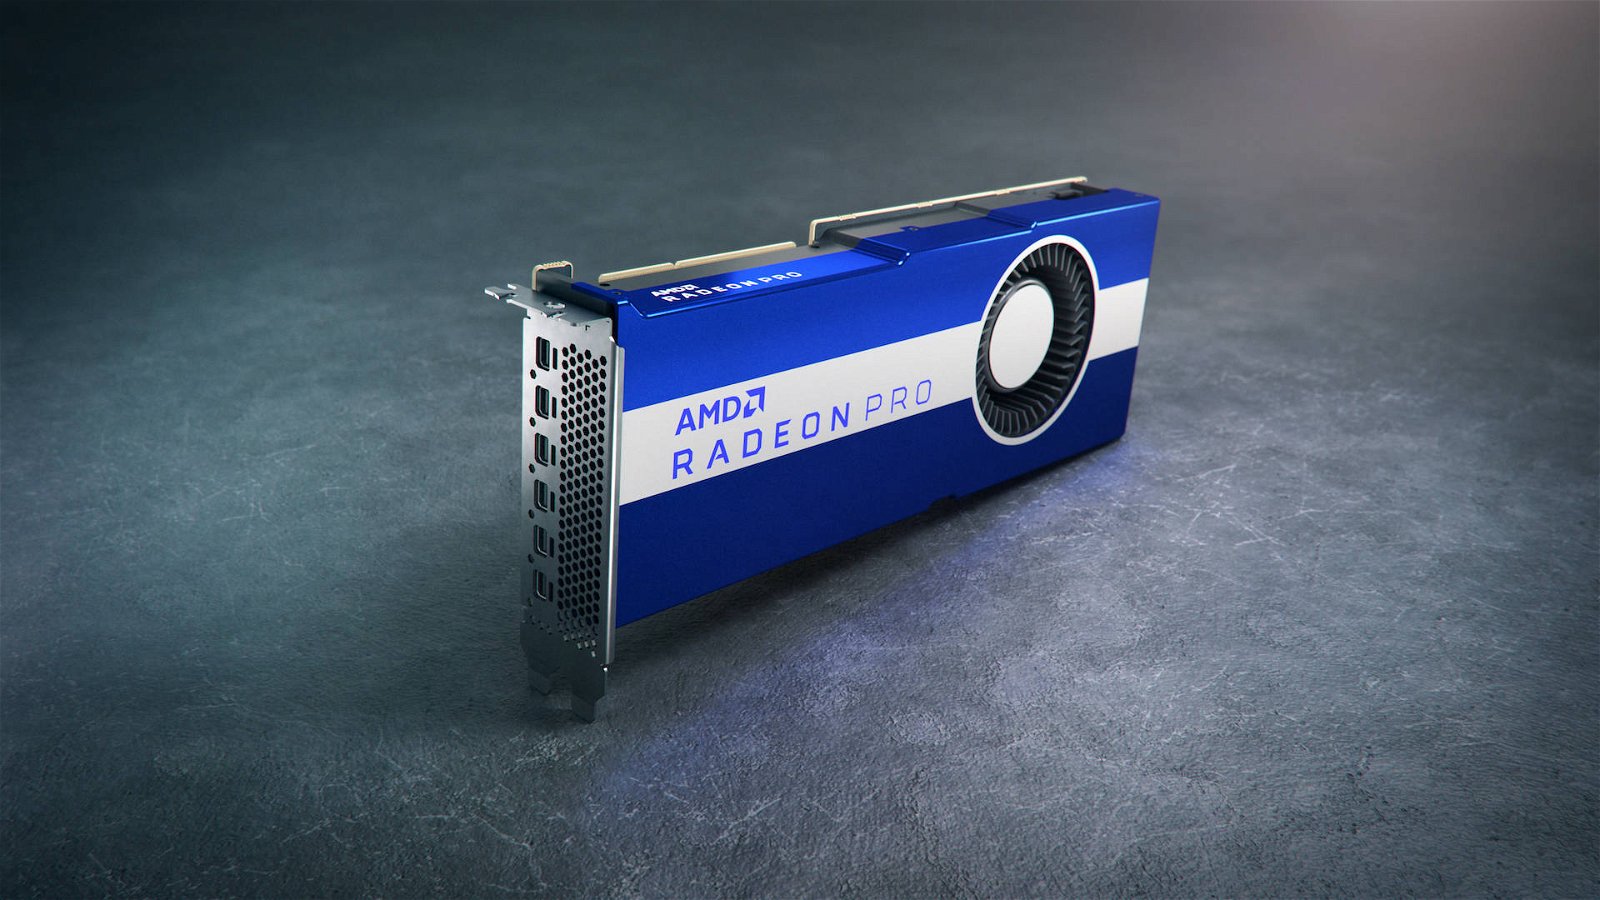 Immagine di AMD Radeon PRO VII ufficiale, parte la sfida alle Nvidia Quadro RTX